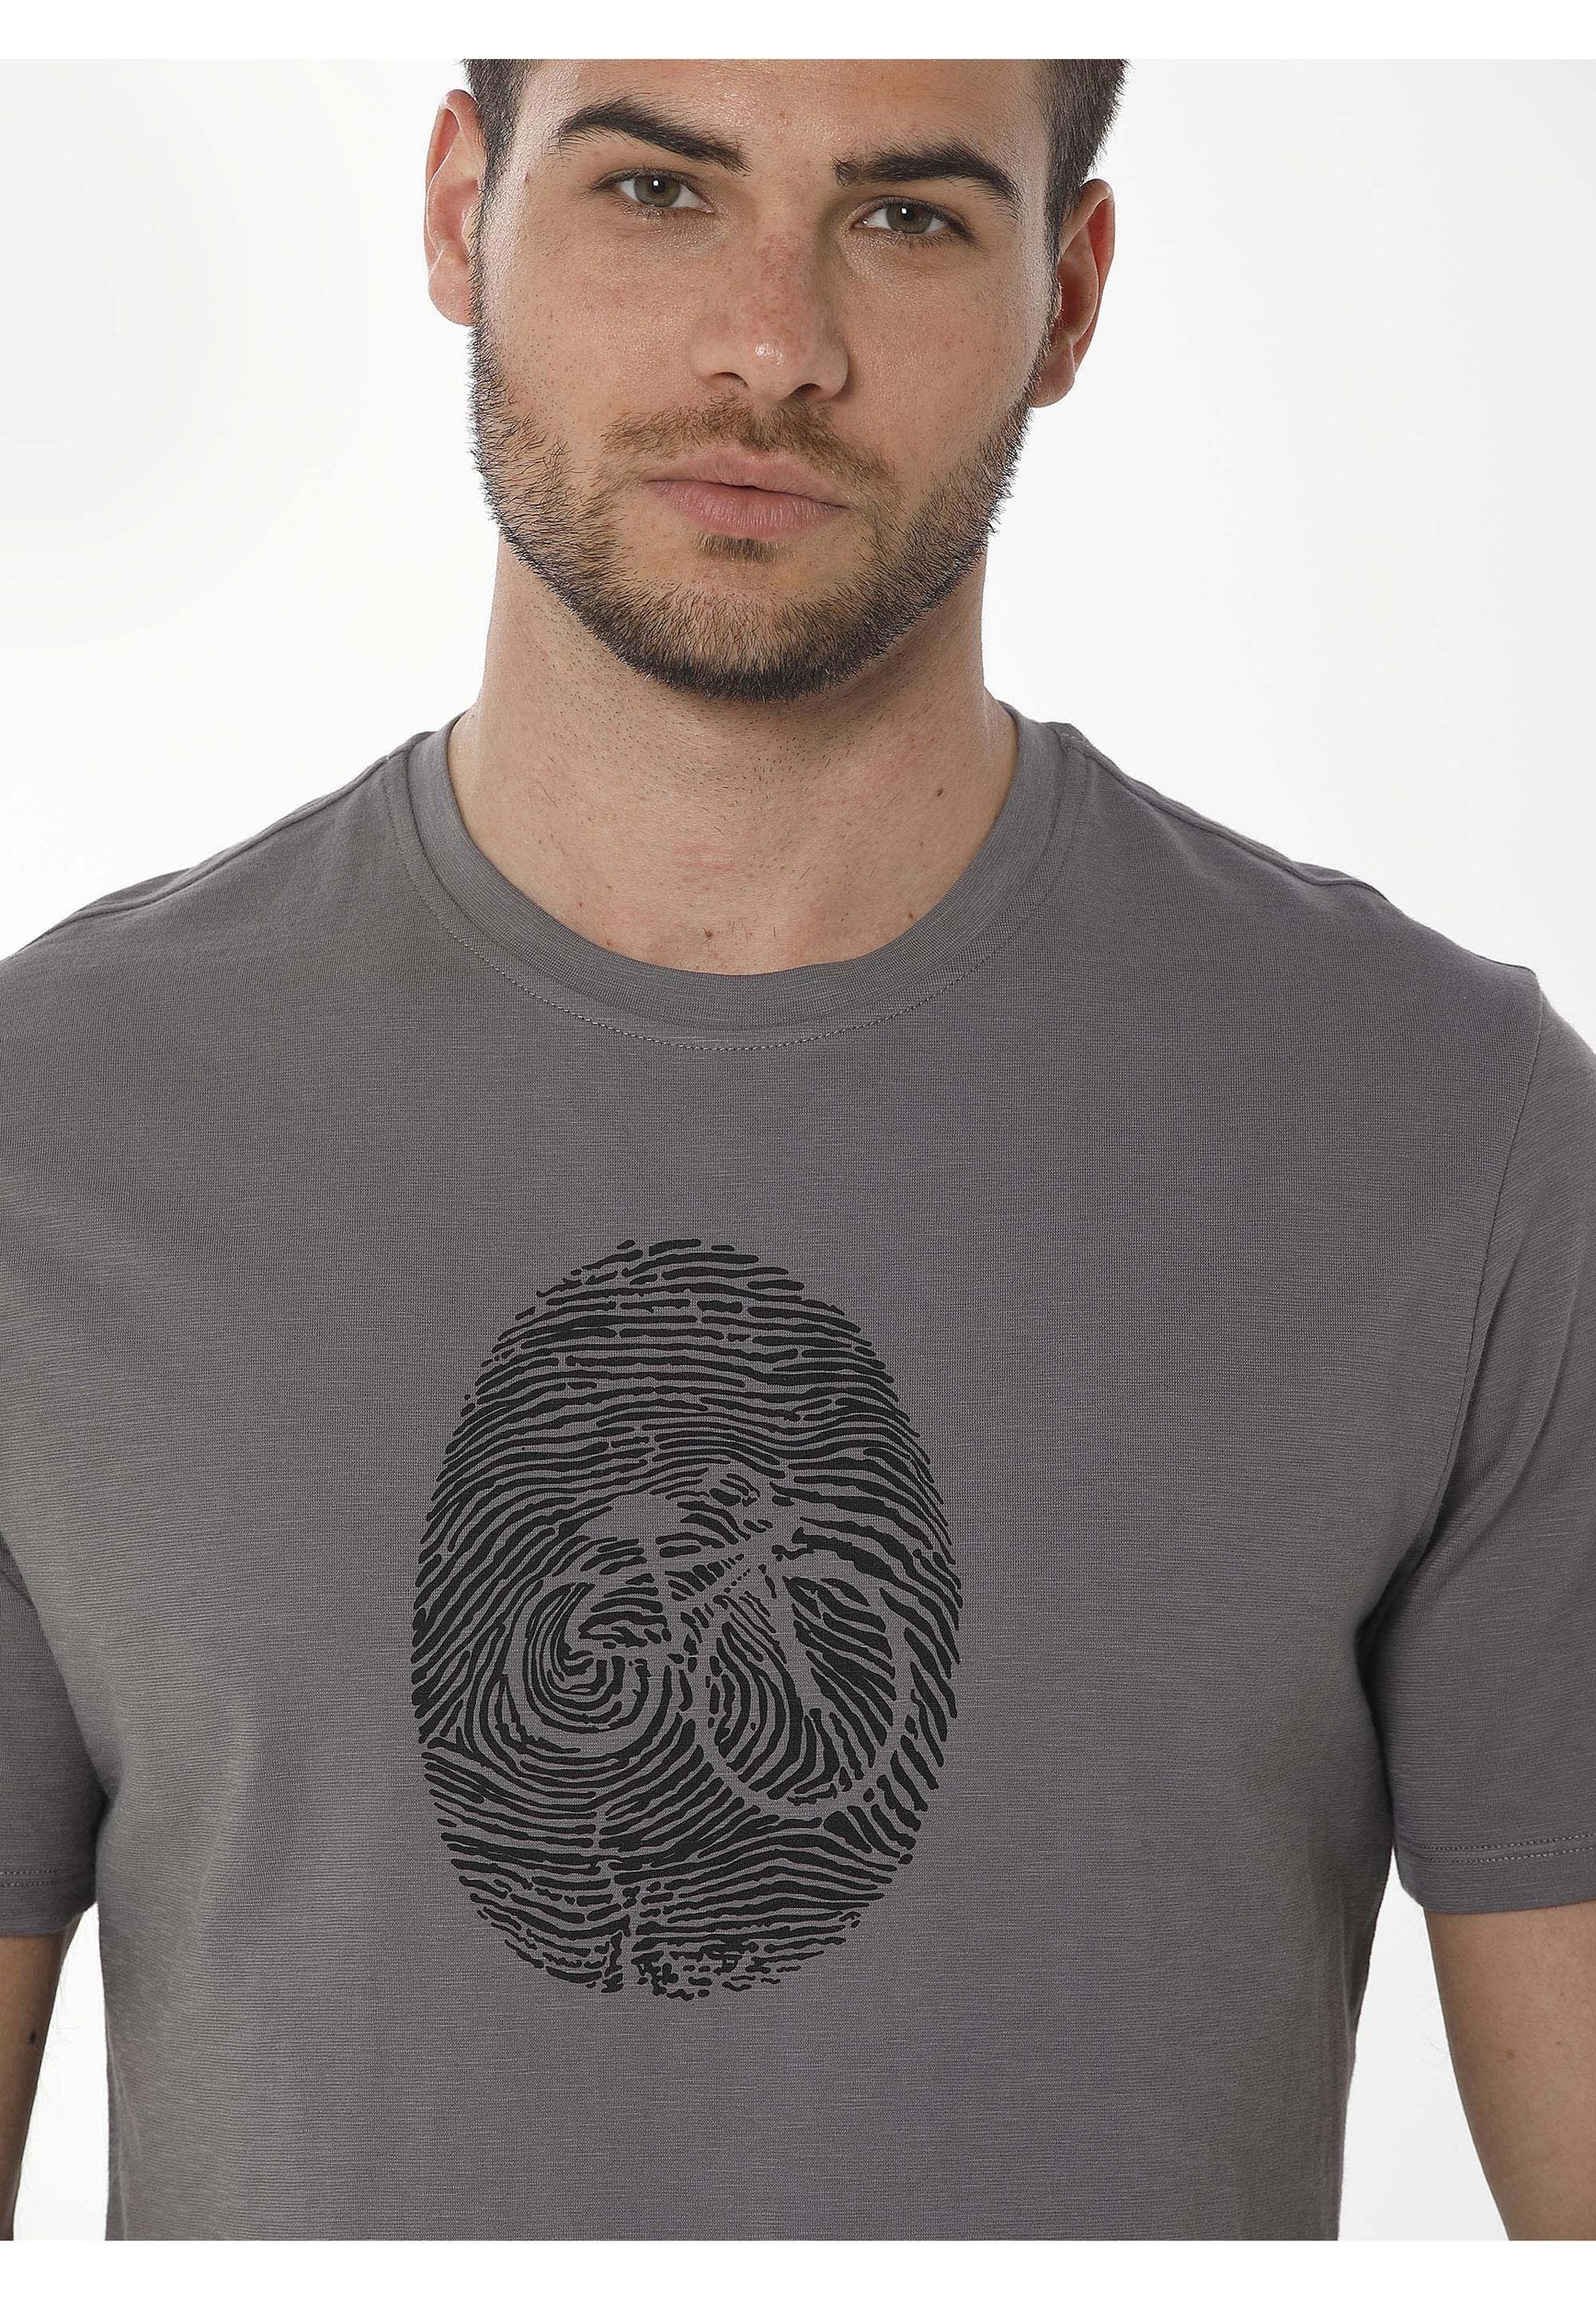 T-Shirt aus Bio-Baumwolle mit Fahrrad-Print